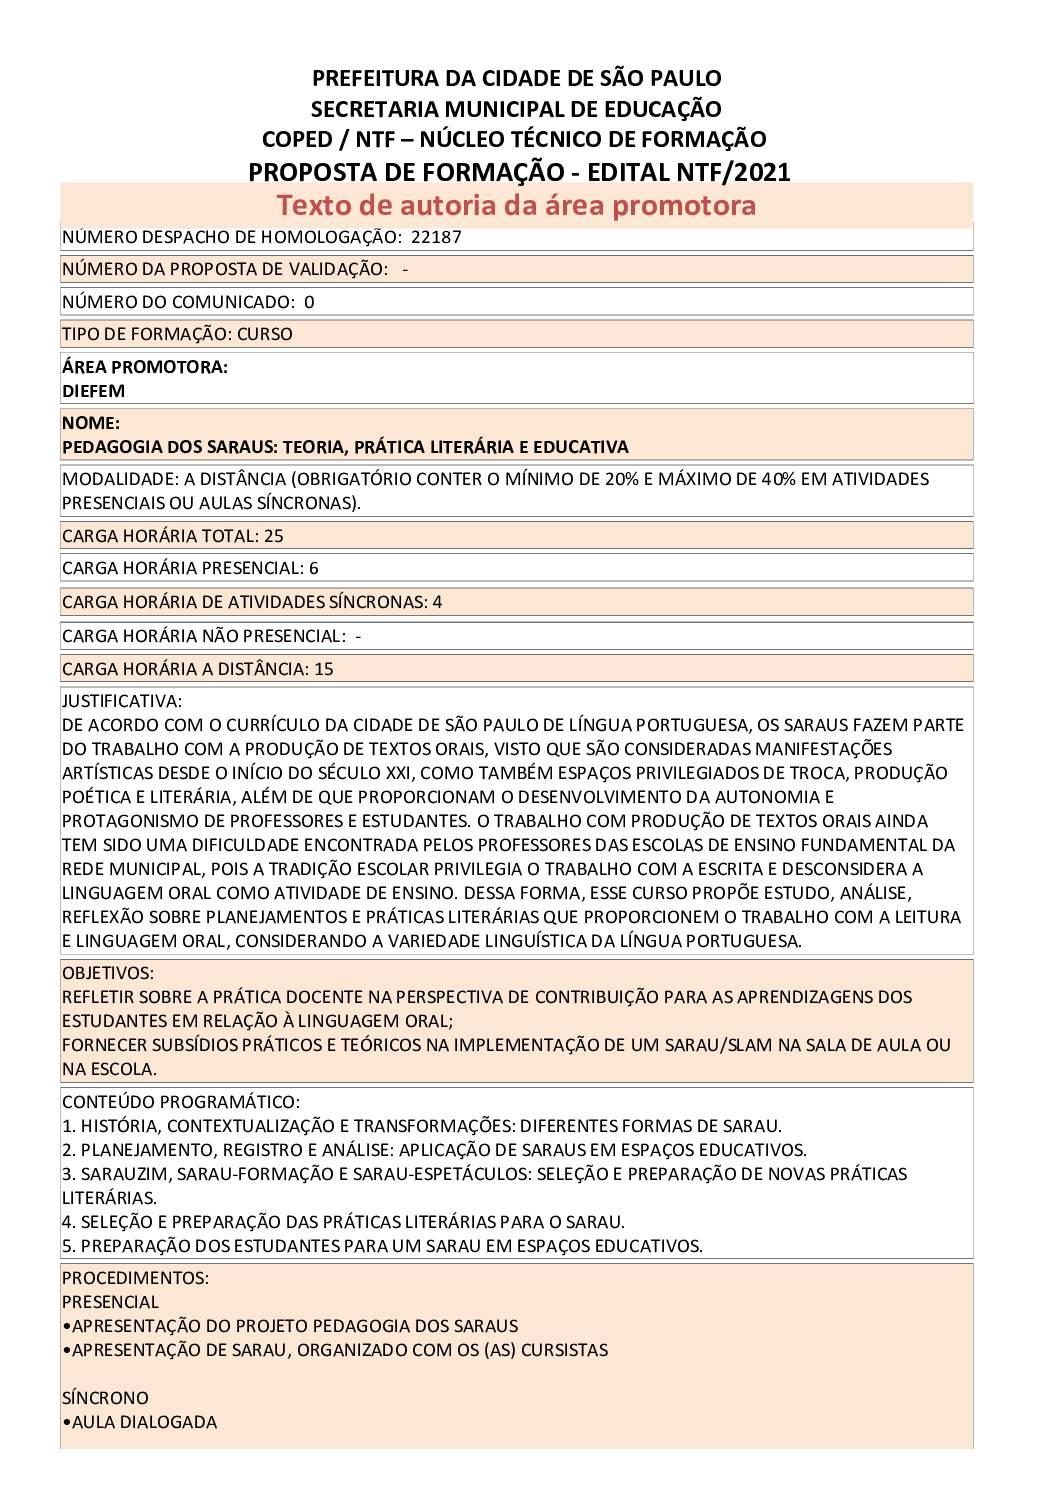 PDF com informações sobre o curso: PEDAGOGIA DOS SARAUS: TEORIA, PRÁTICA LITERÁRIA E EDUCATIVA